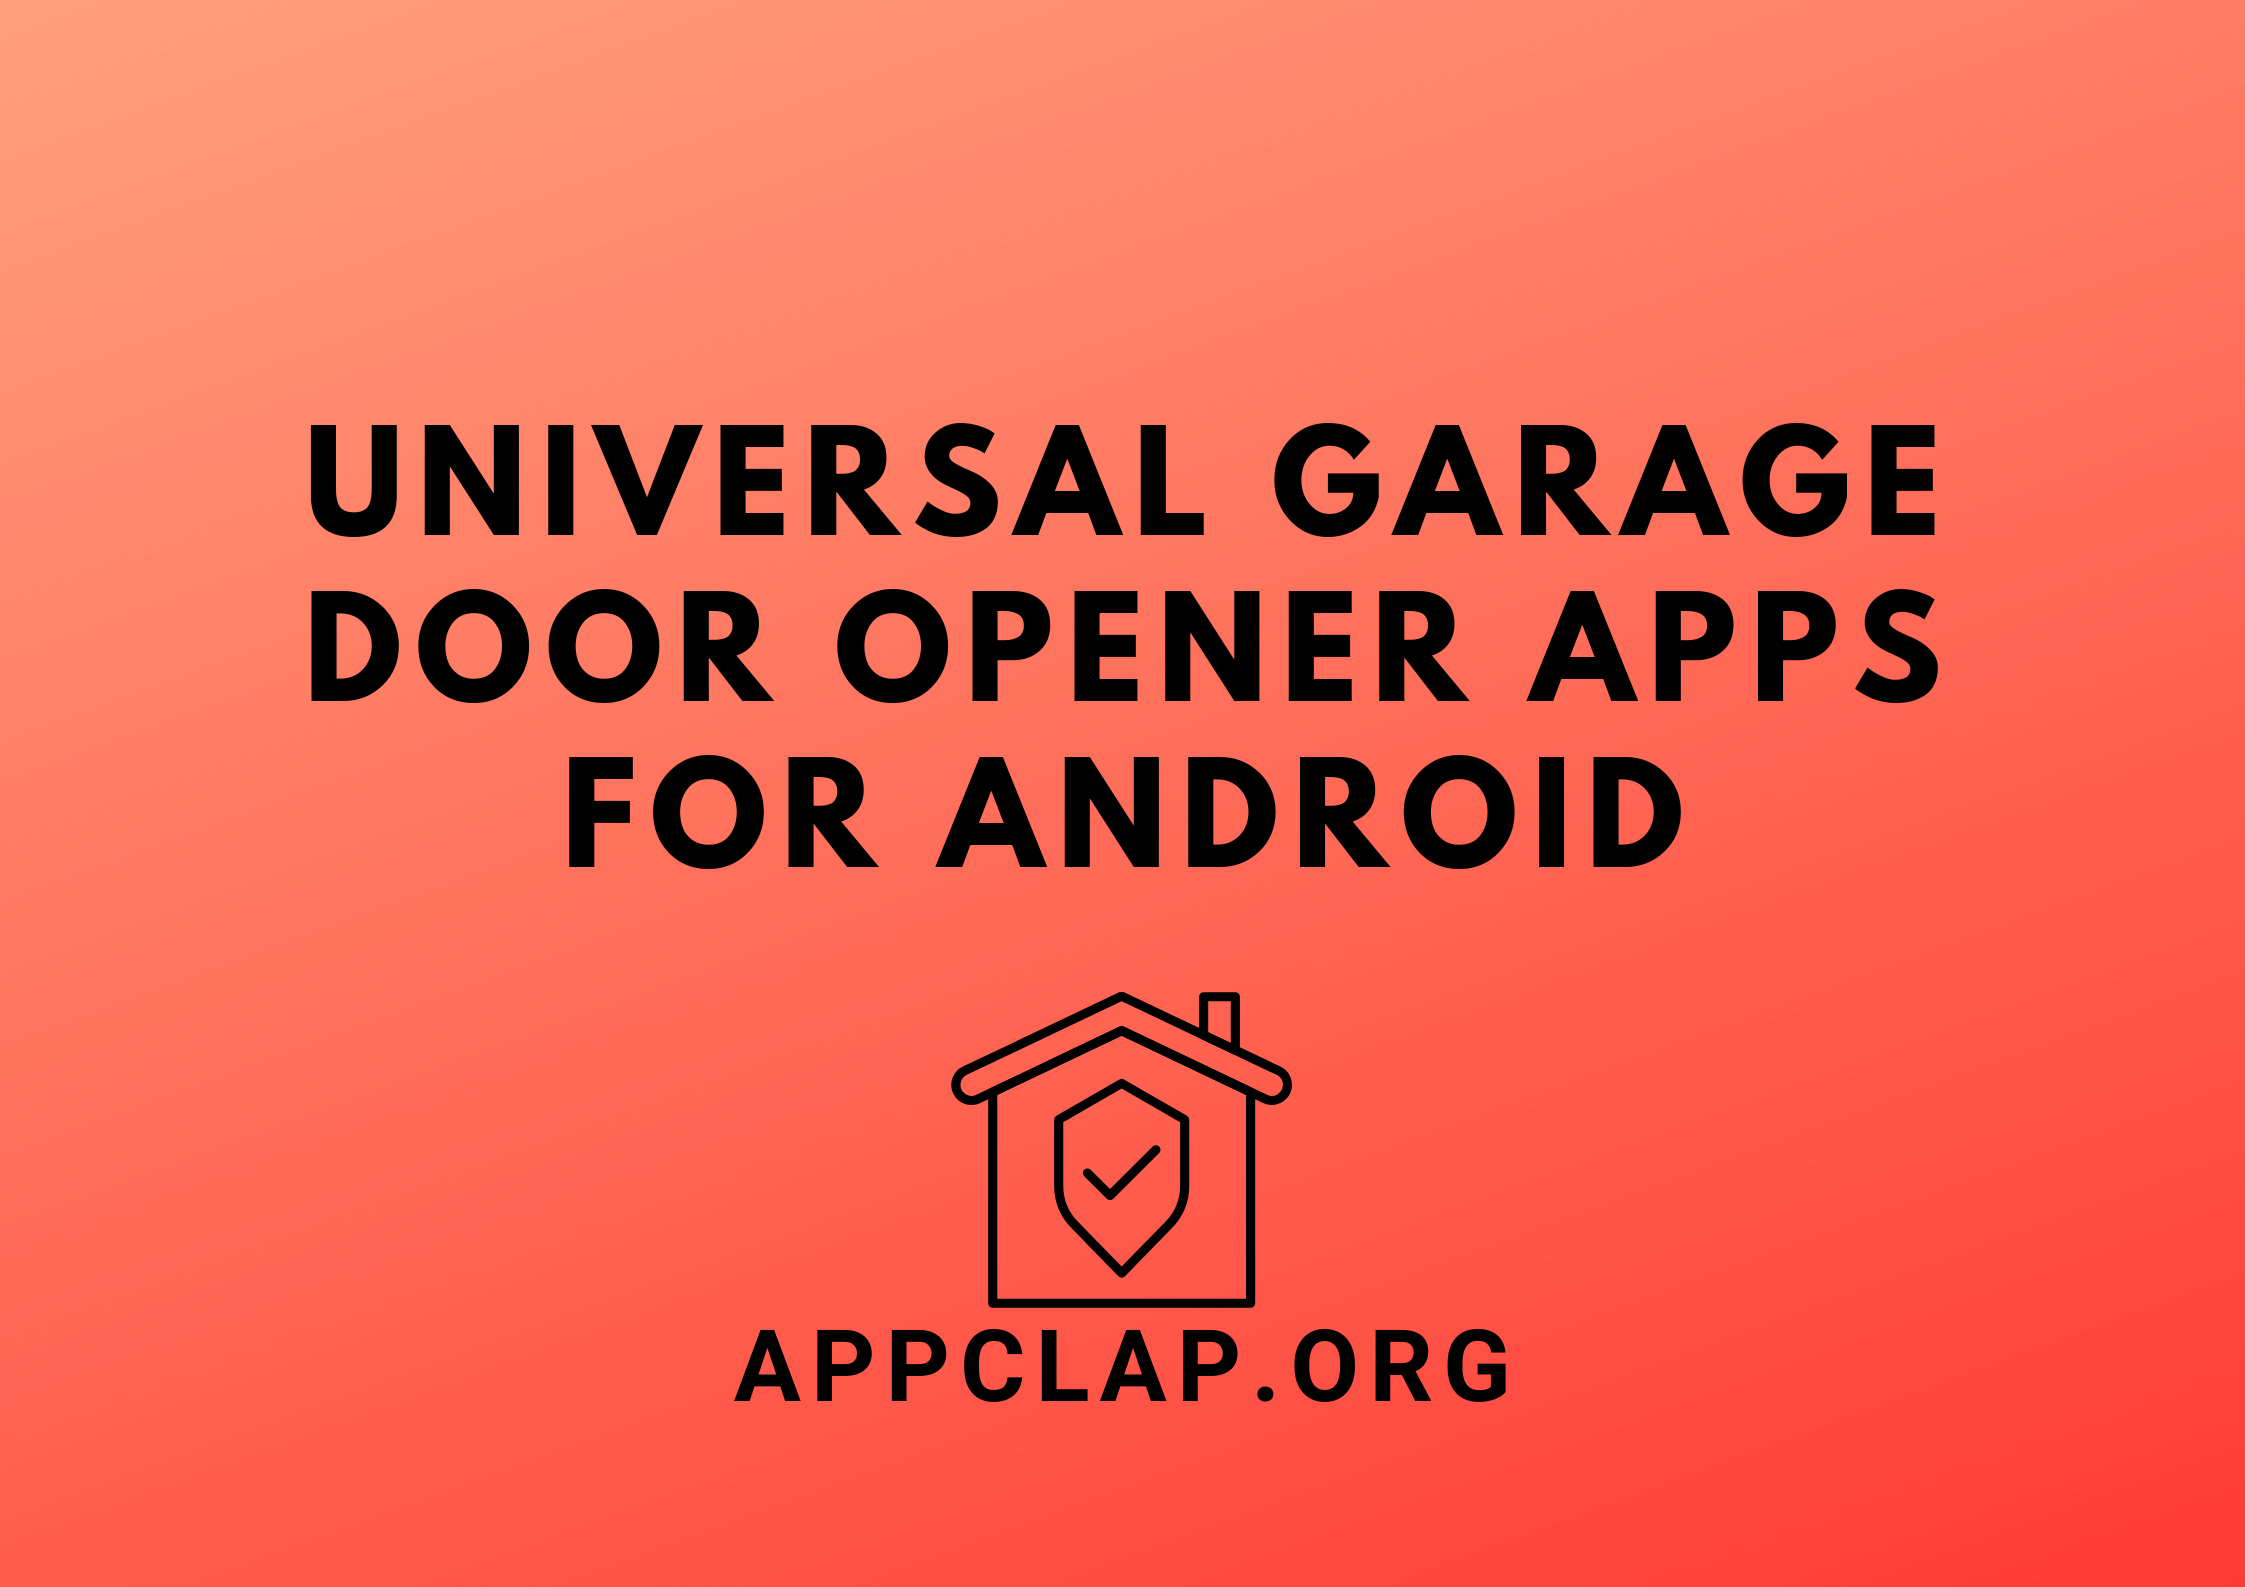 Universal Garage Door Opener Apps for Android